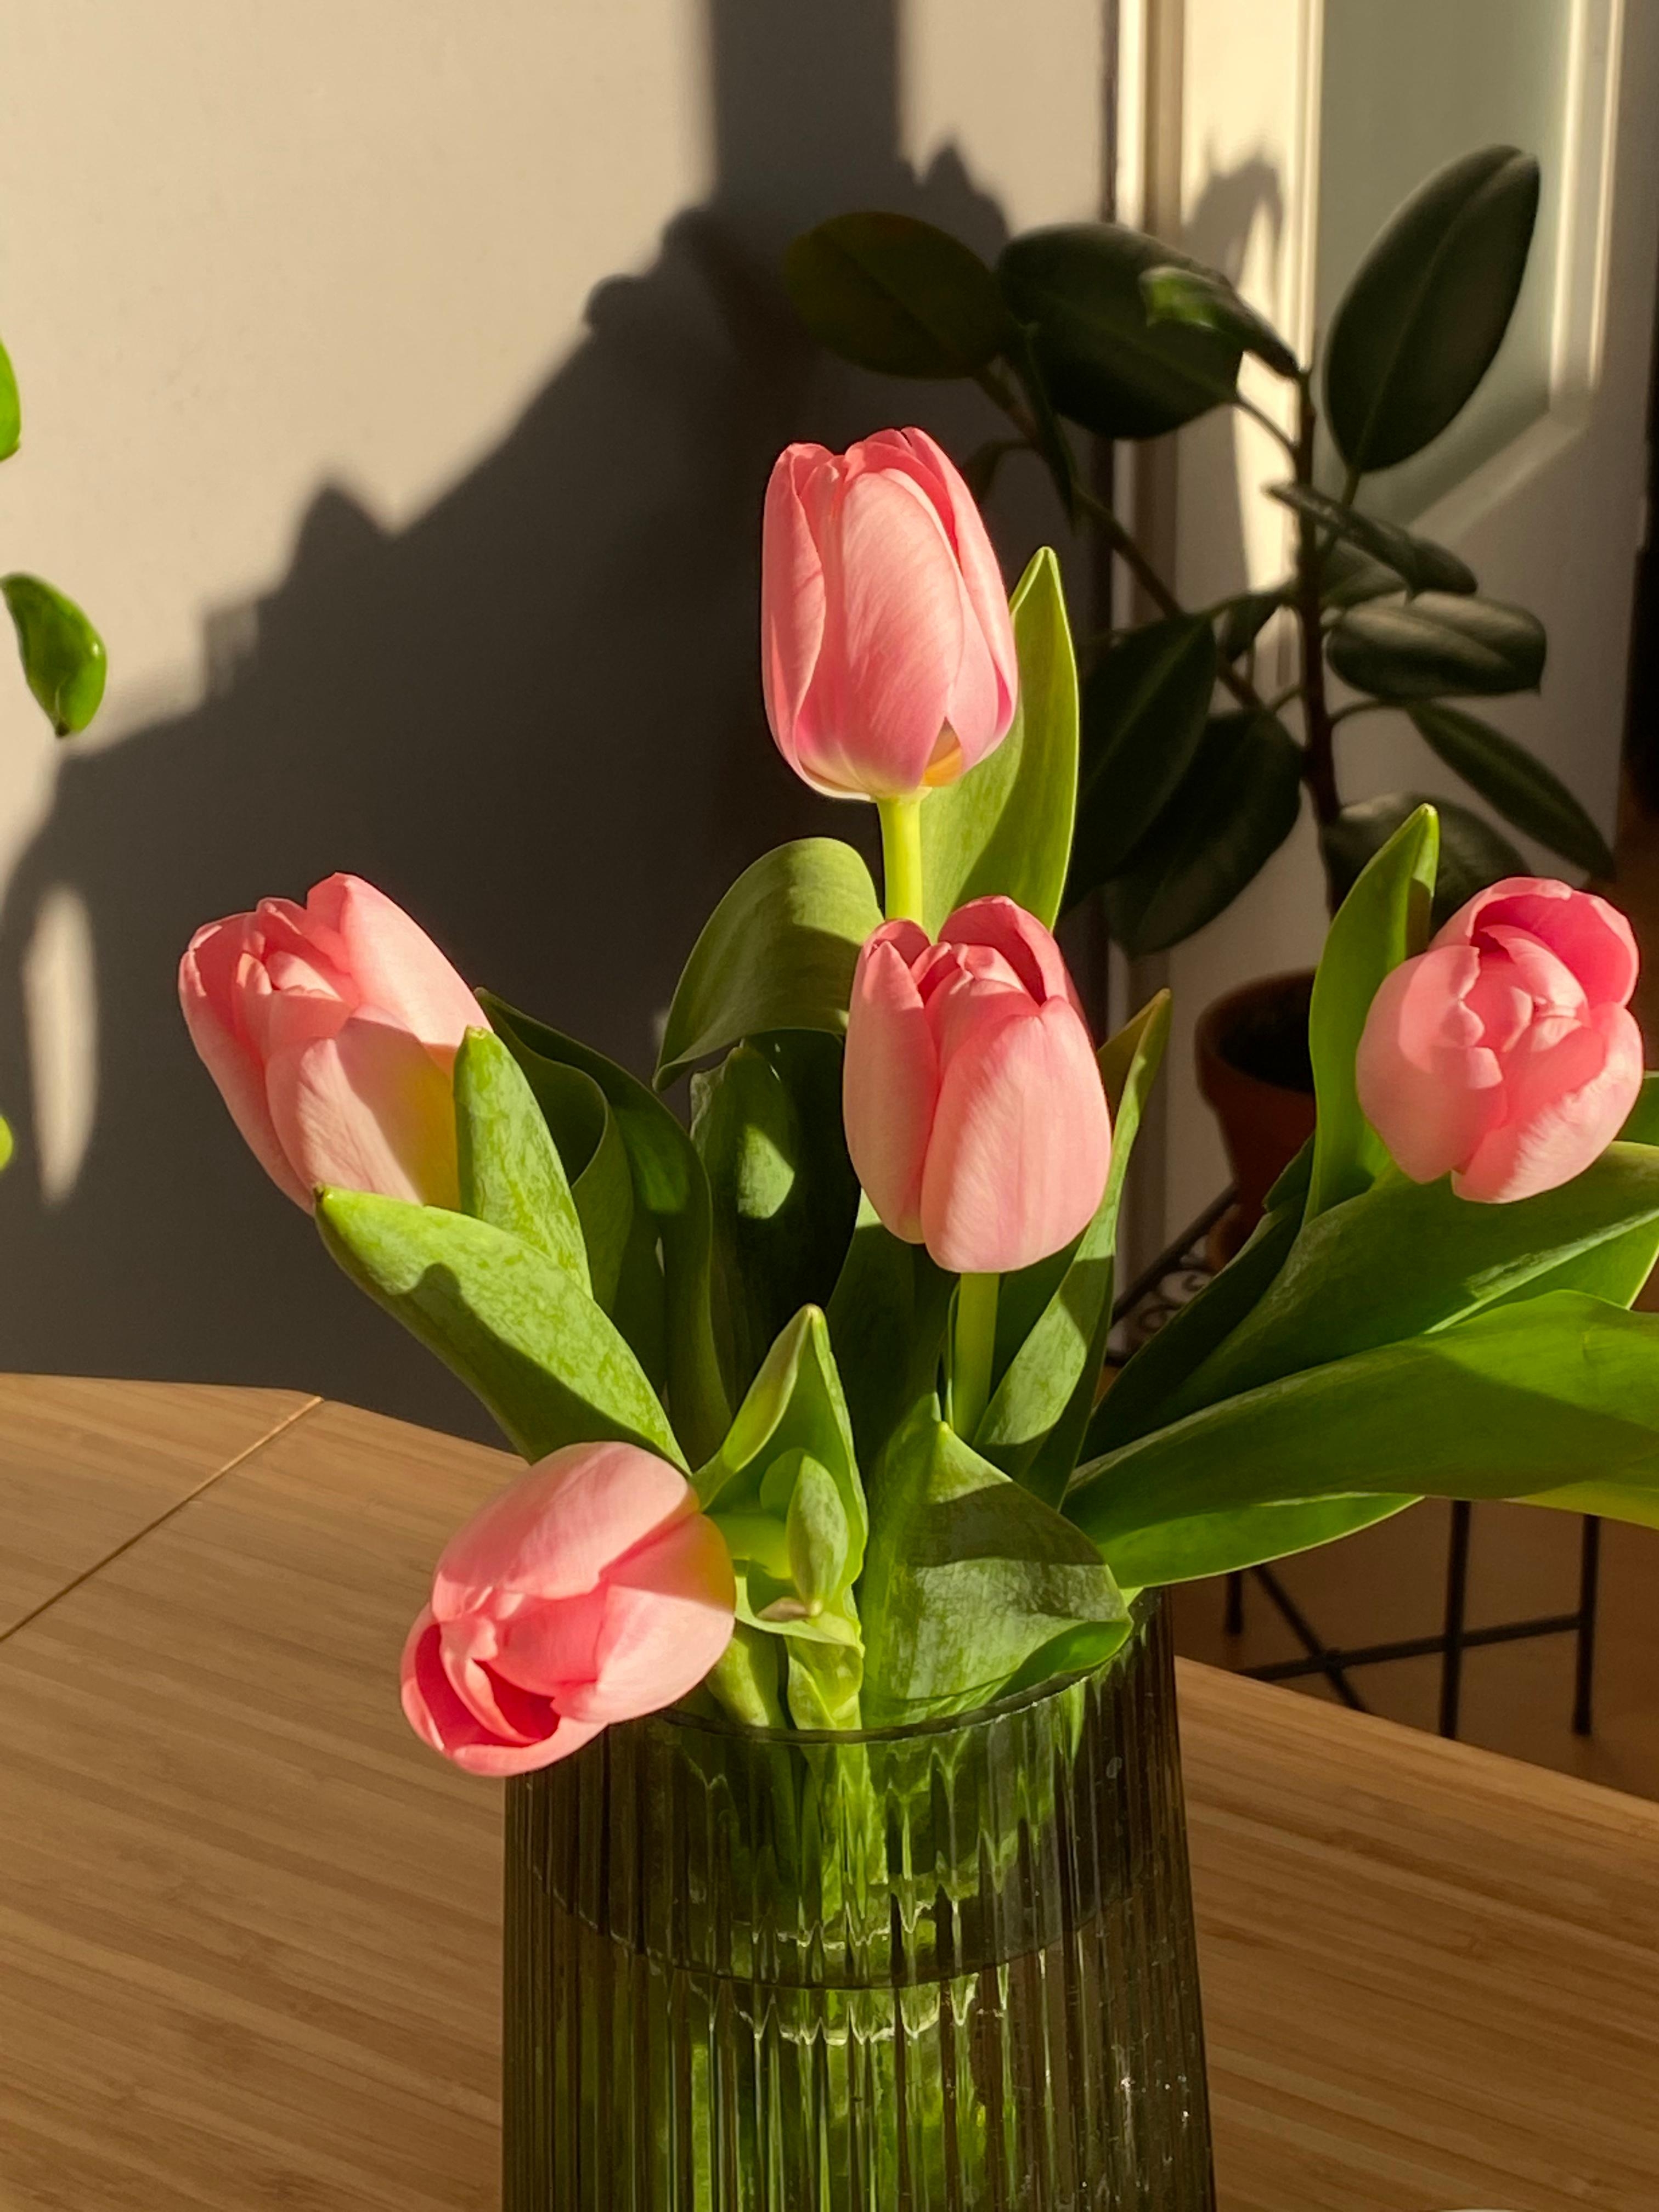 Das Wochenende wird mit frischen Tulpen eingeläutet #freshflowerfriday